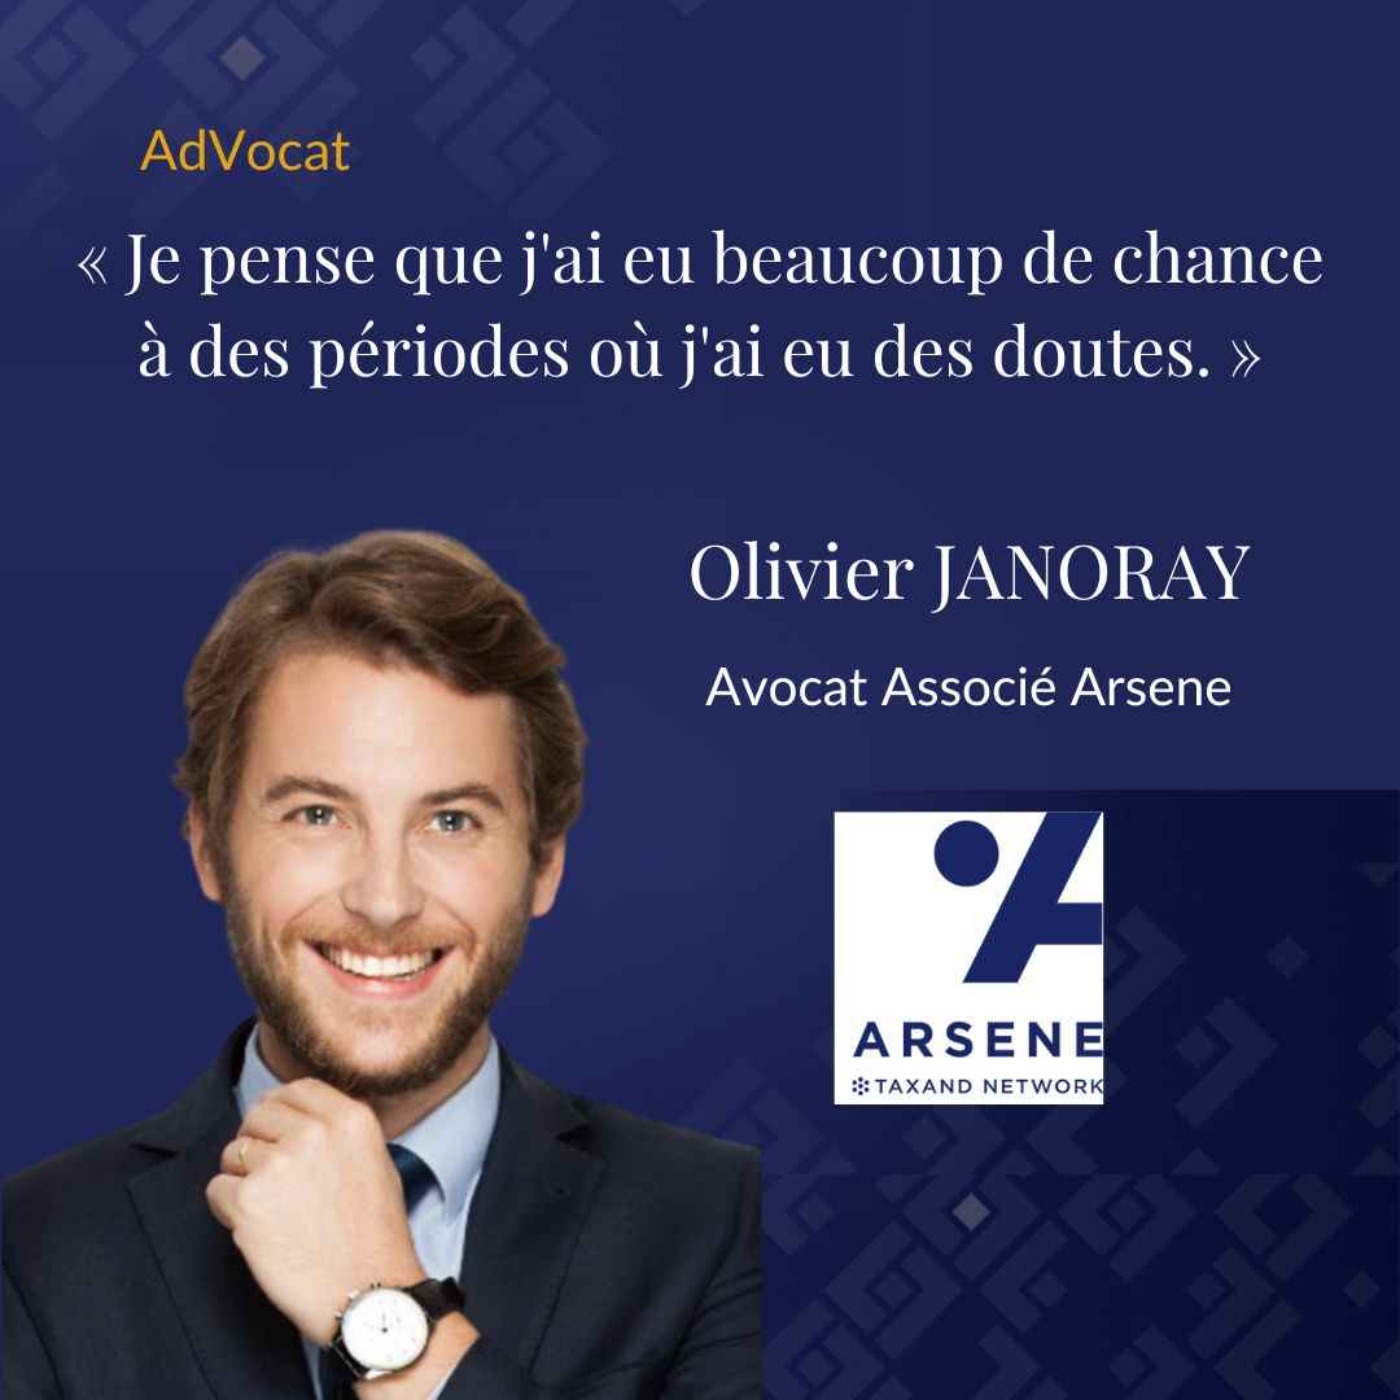 Olivier Janoray, Associé chez Arsene.